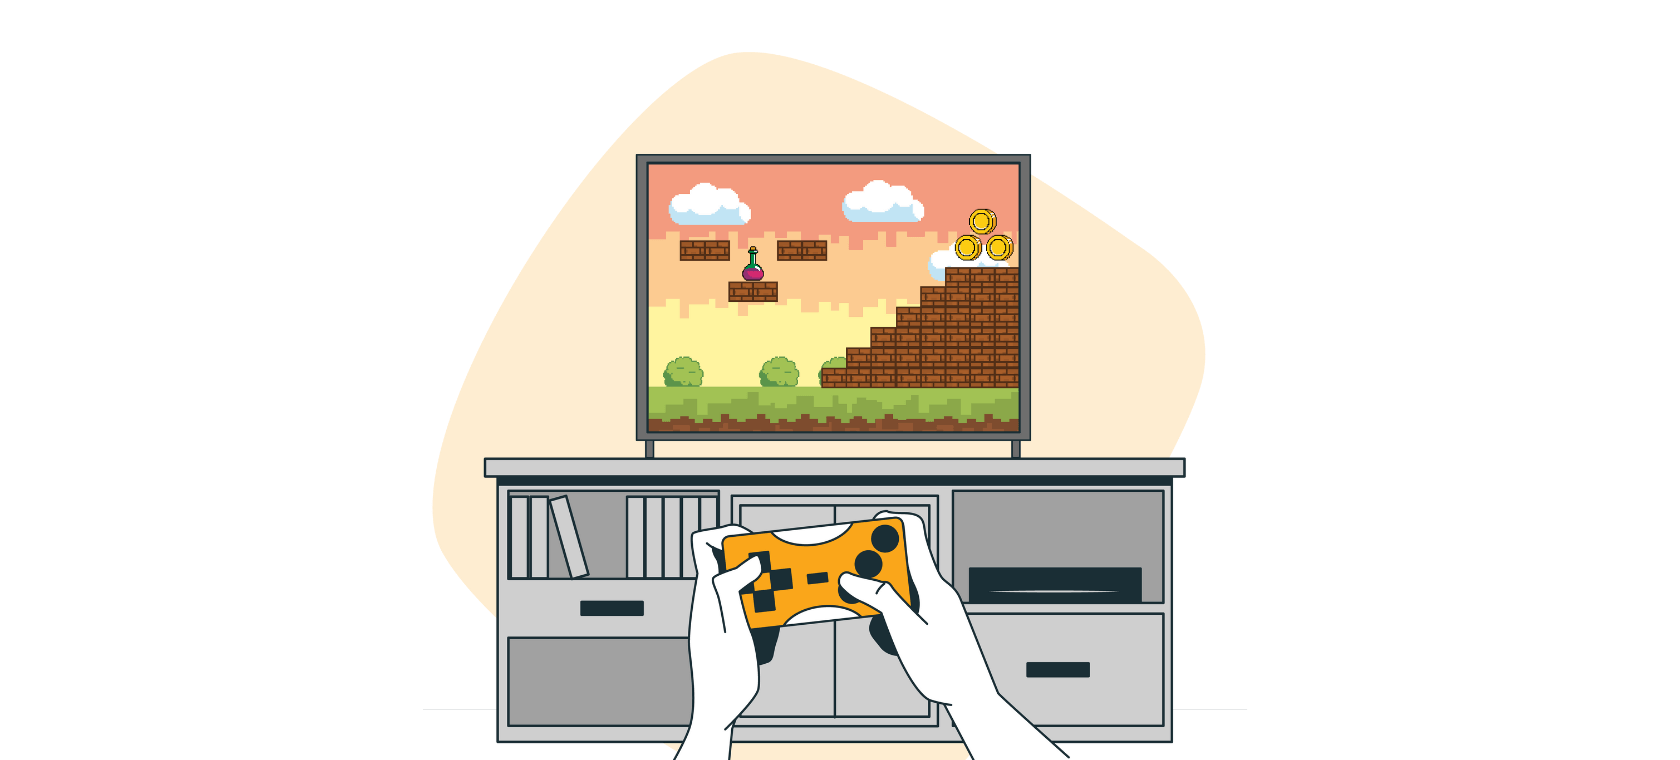 La ilustración muestra una consola de videojuegos de color naranja.